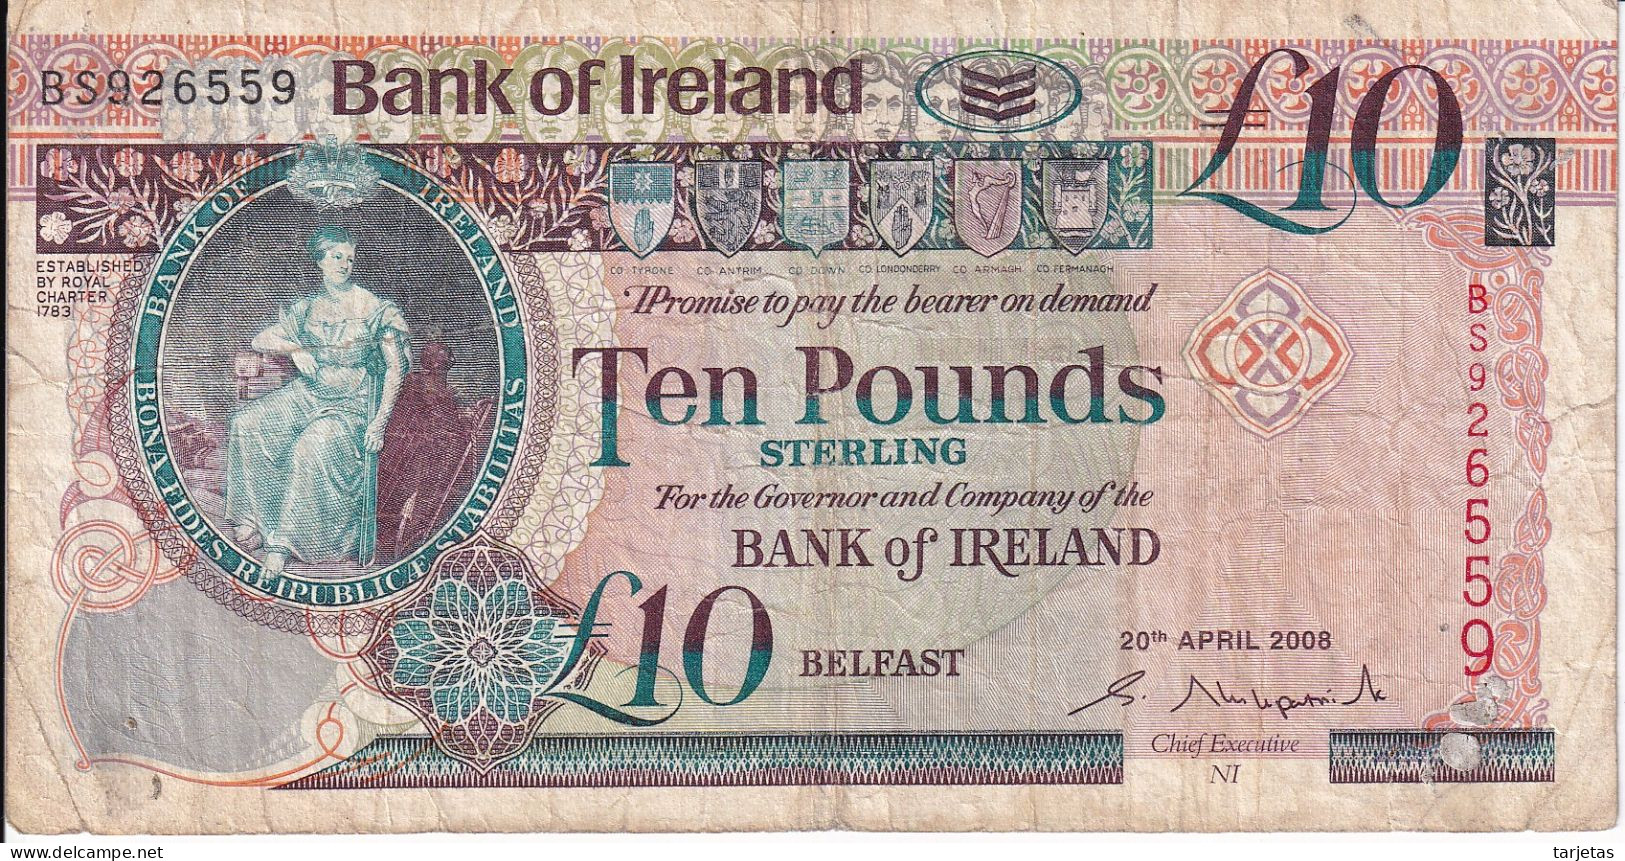 BILLETE DE IRLANDA DE 10 POUNDS DEL AÑO 2008 (BANKNOTE) - Ireland